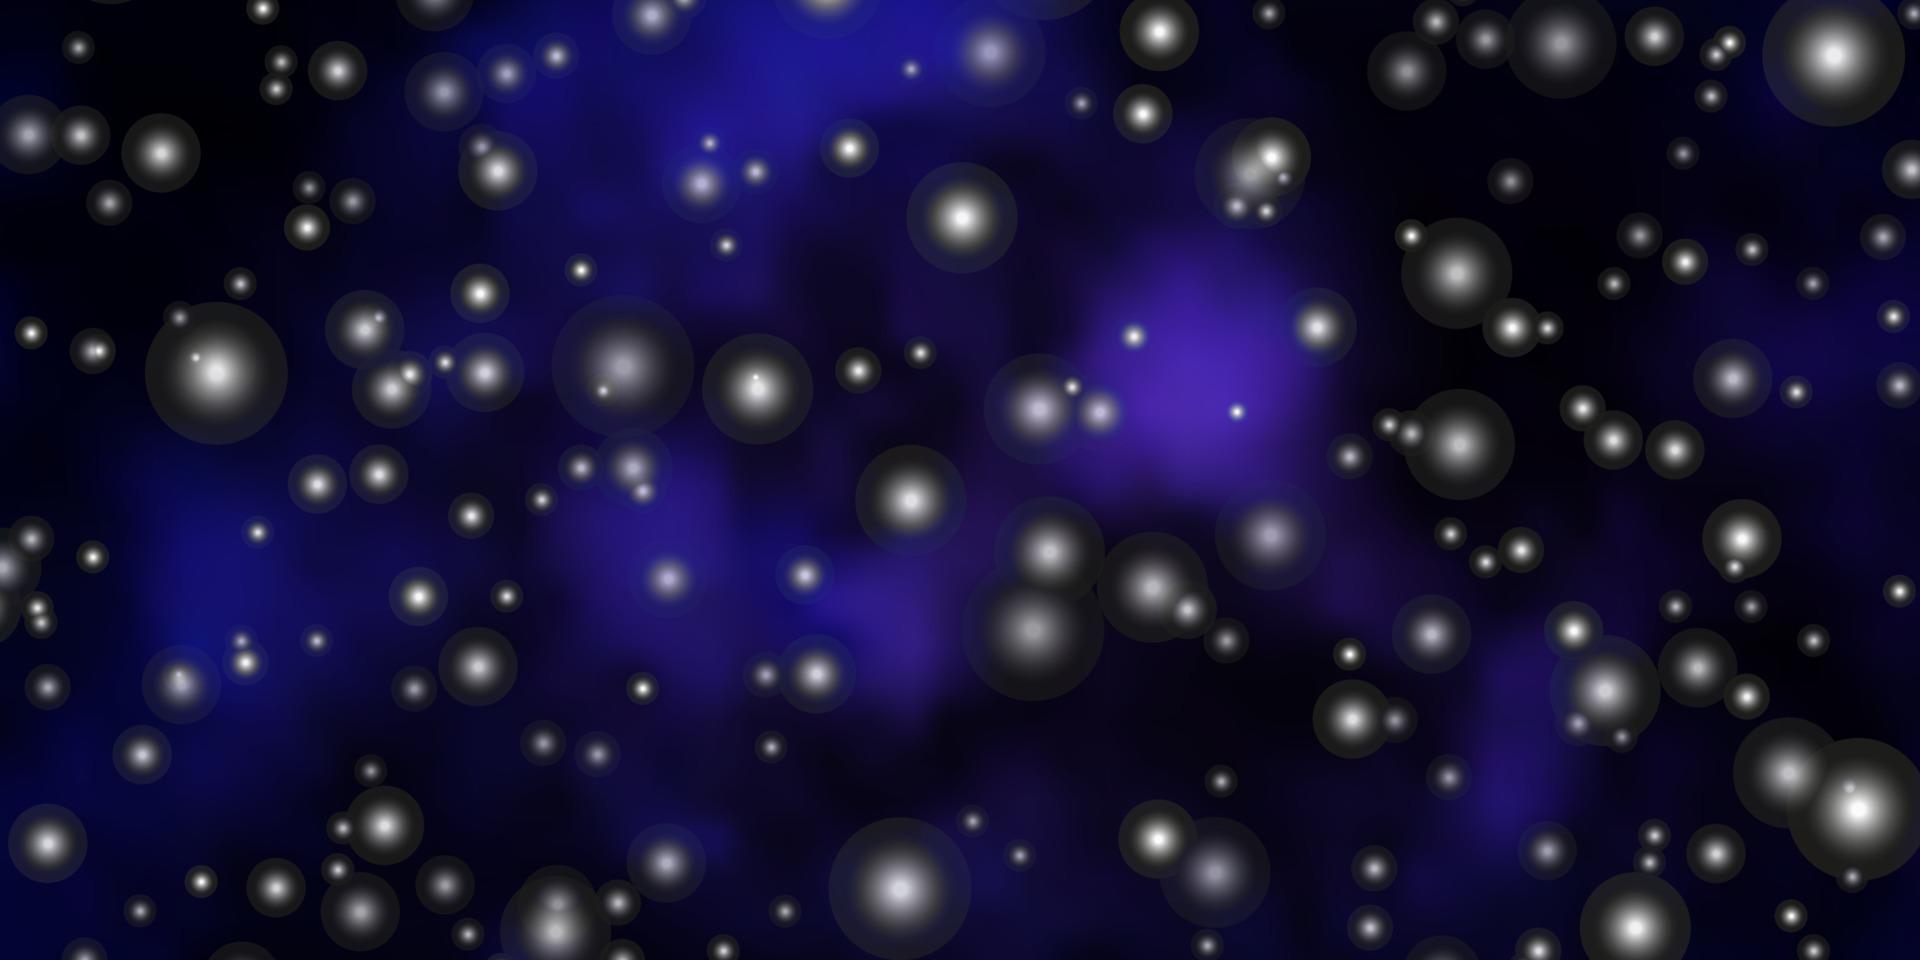 dunkelvioletter Vektorhintergrund mit kleinen und großen Sternen. vektor